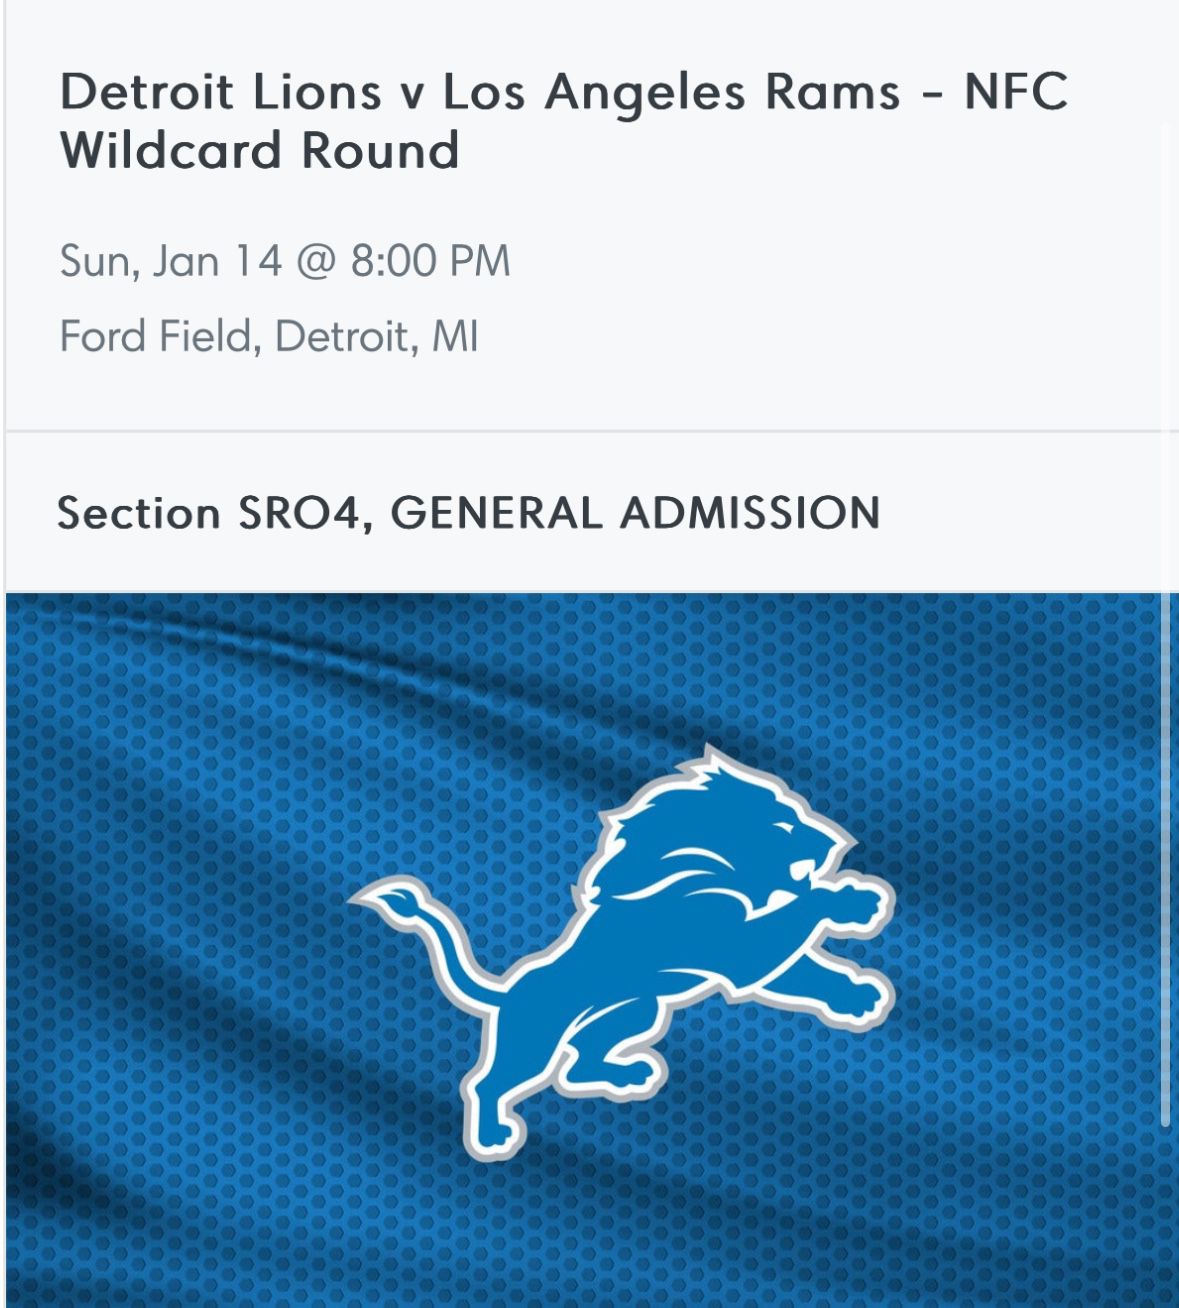 Lions vs Rams Wildcard